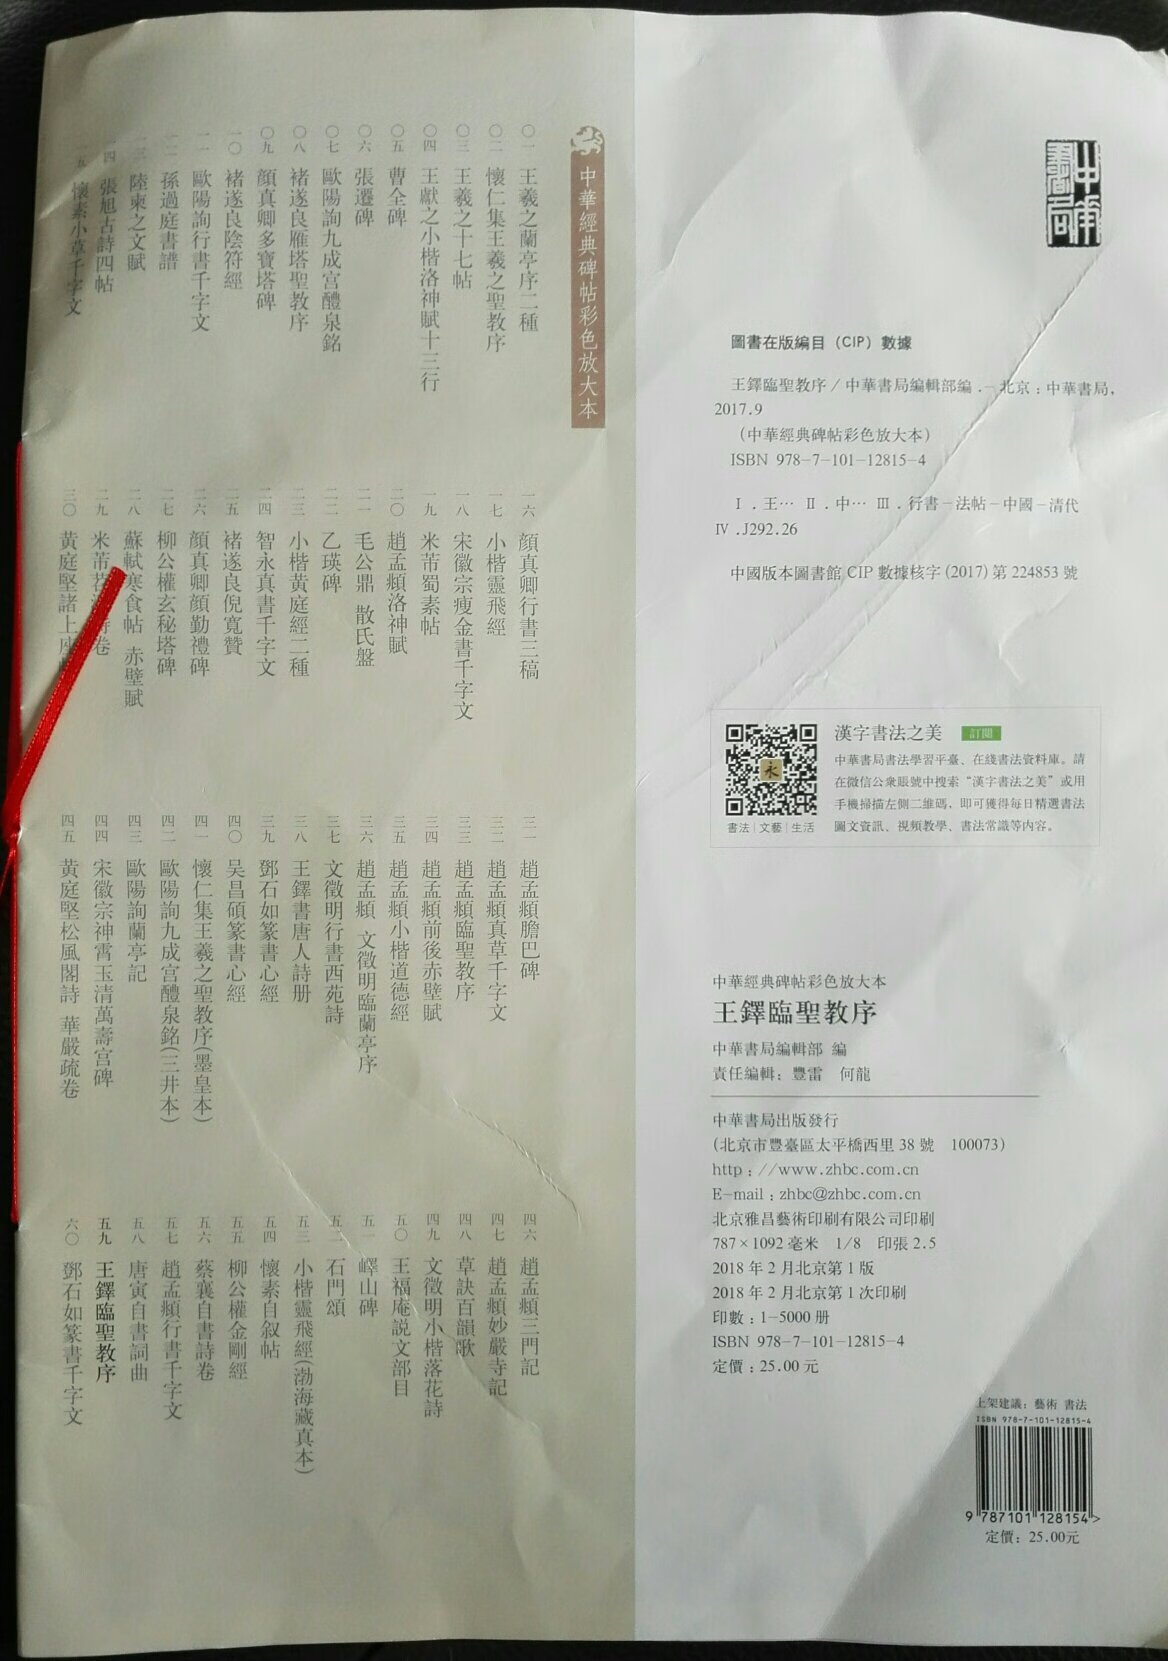 大出意外，中华书局的书印成这种样子，模糊。也许是没得到清晰的图片制板。一个订单分成两次送，此本单独送，满是折痕。其他书装在纸箱很好。